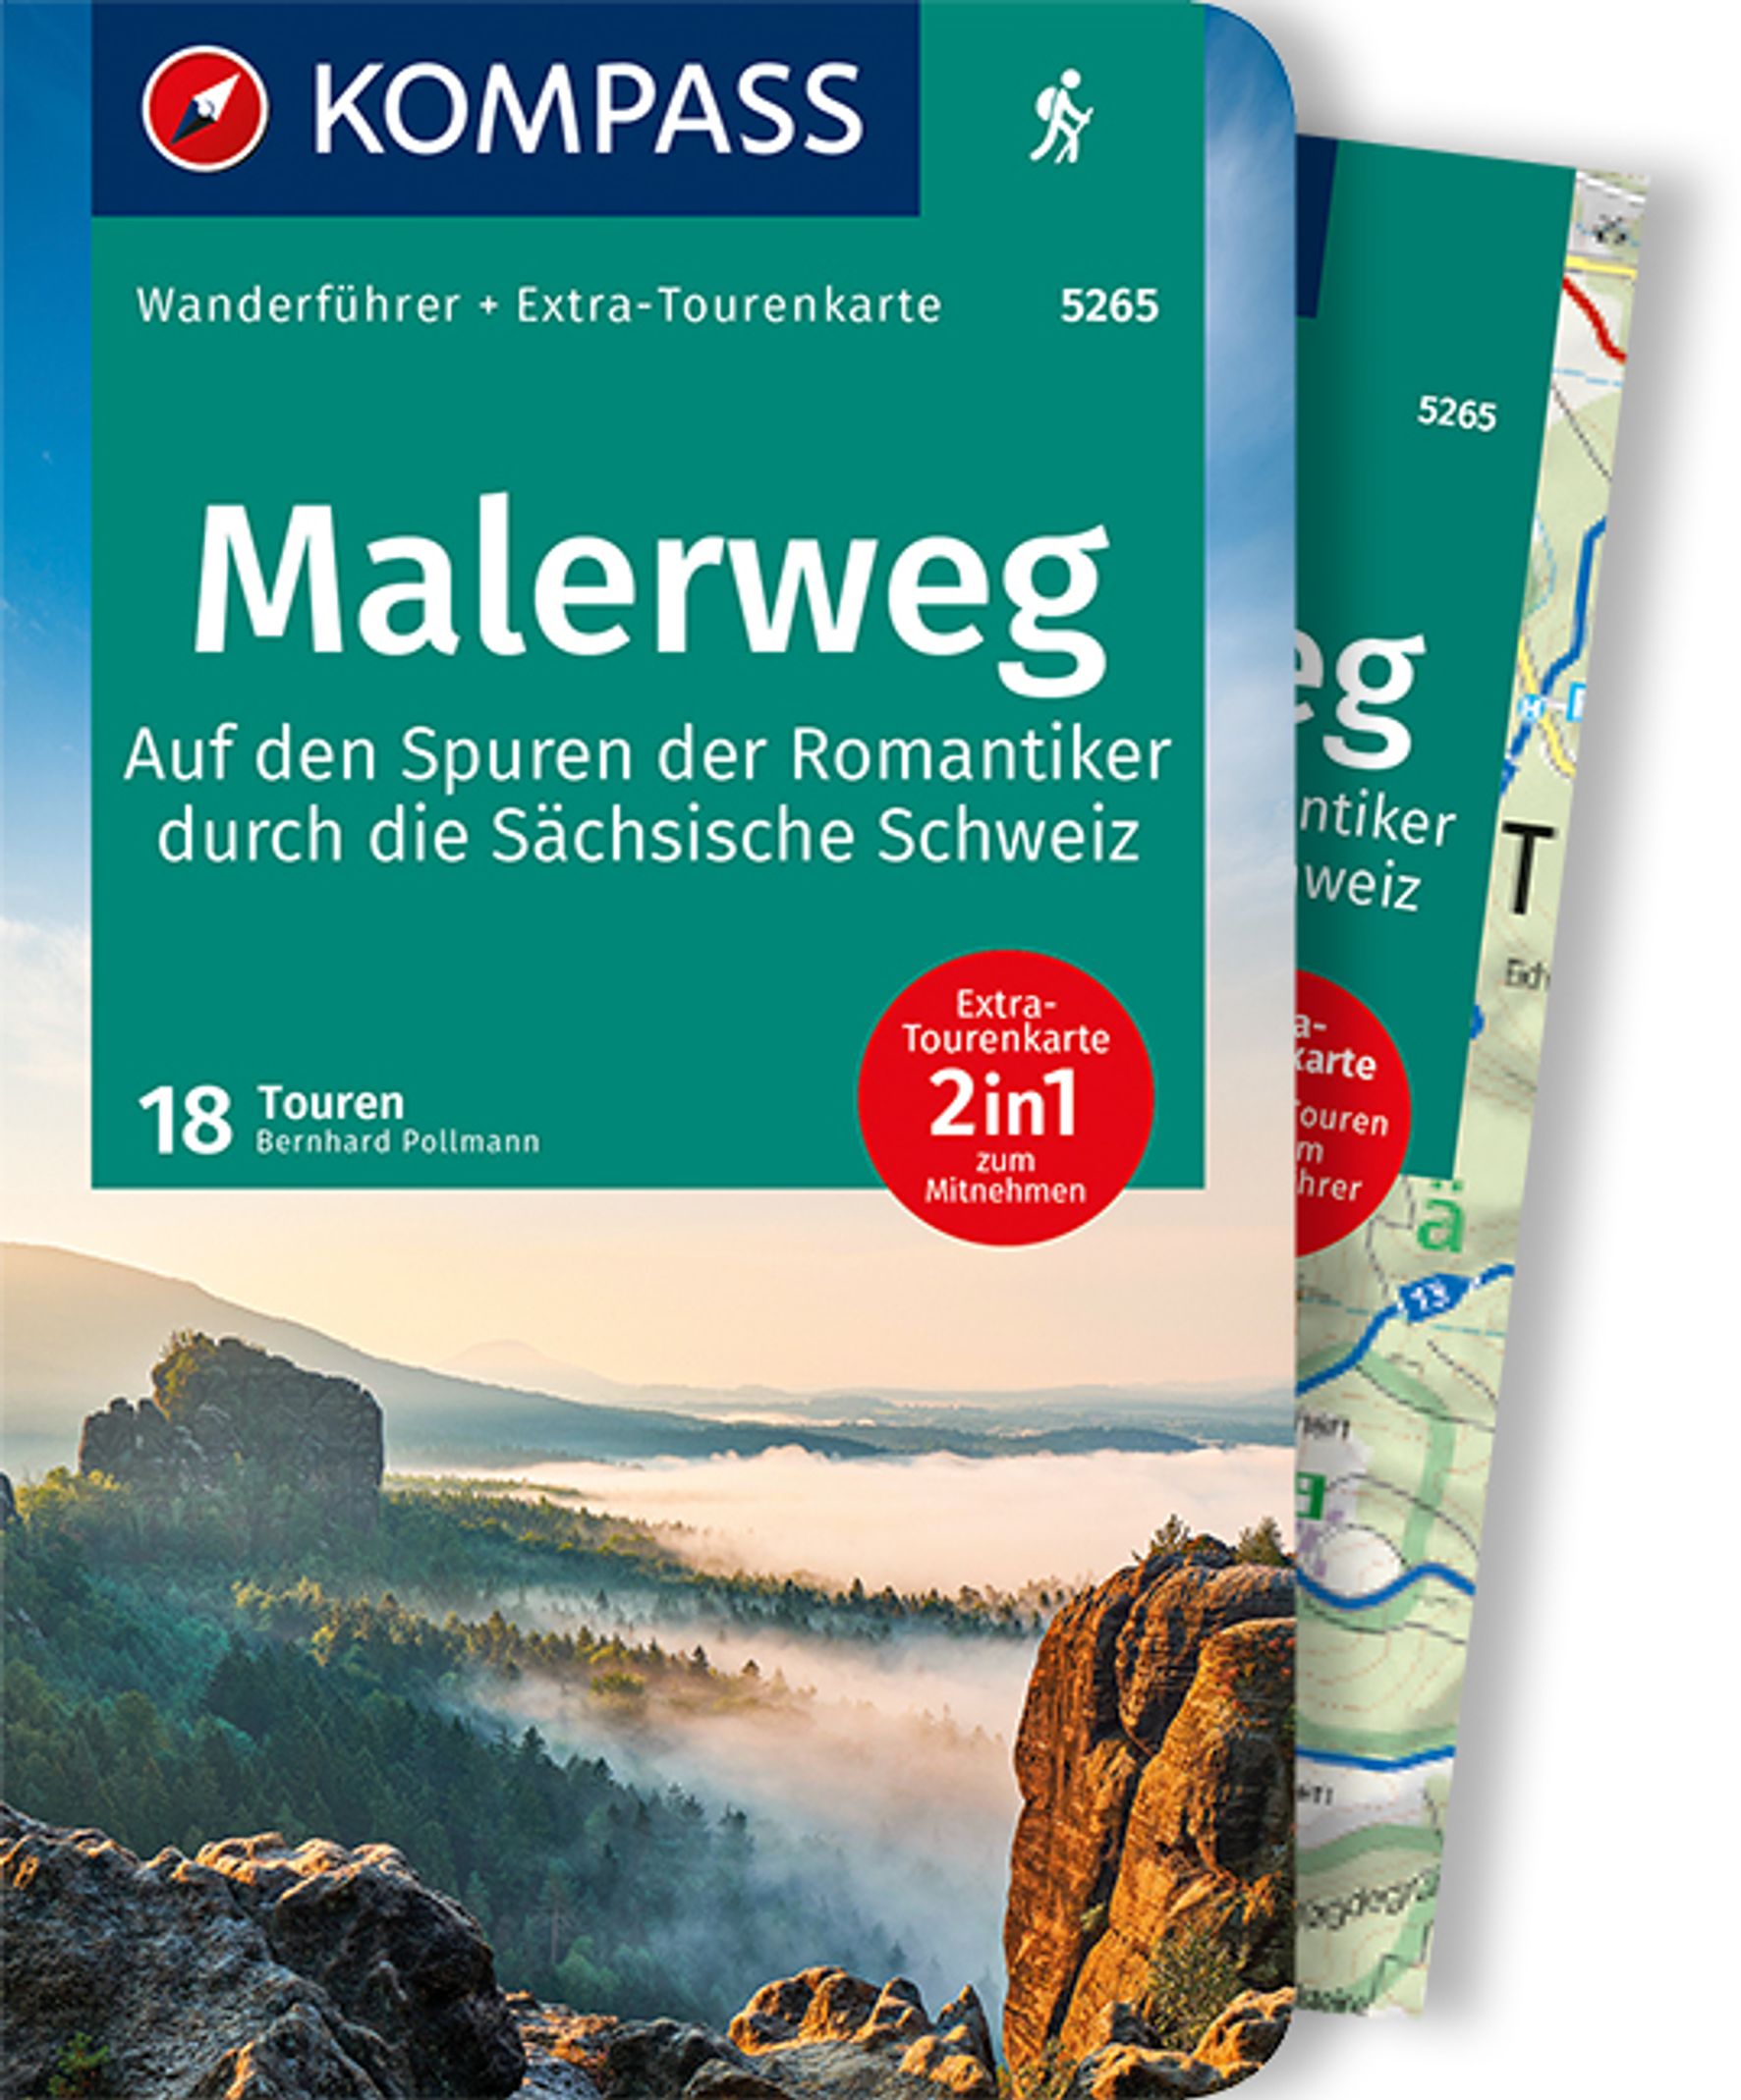 MAIRDUMONT Malerweg - Auf den Spuren der Romantiker durch die Sächsische Schweiz, 18 Touren mit Extra-Tourenkarte